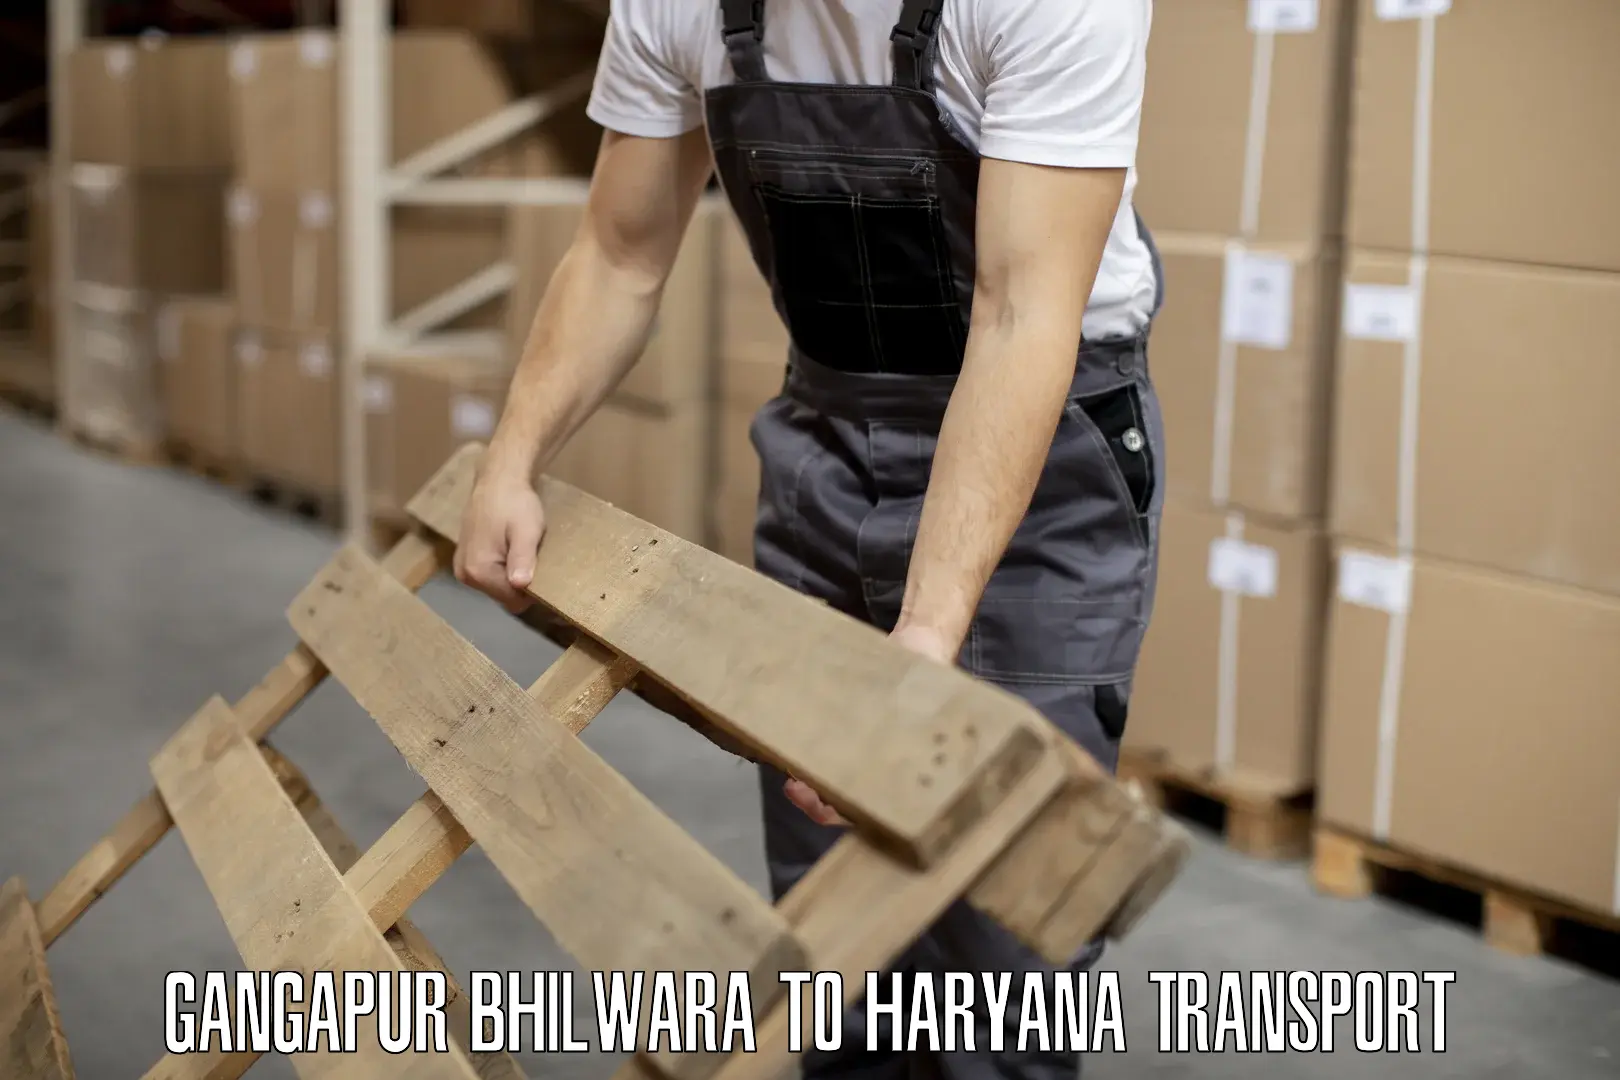 Shipping partner Gangapur Bhilwara to Budha Khera